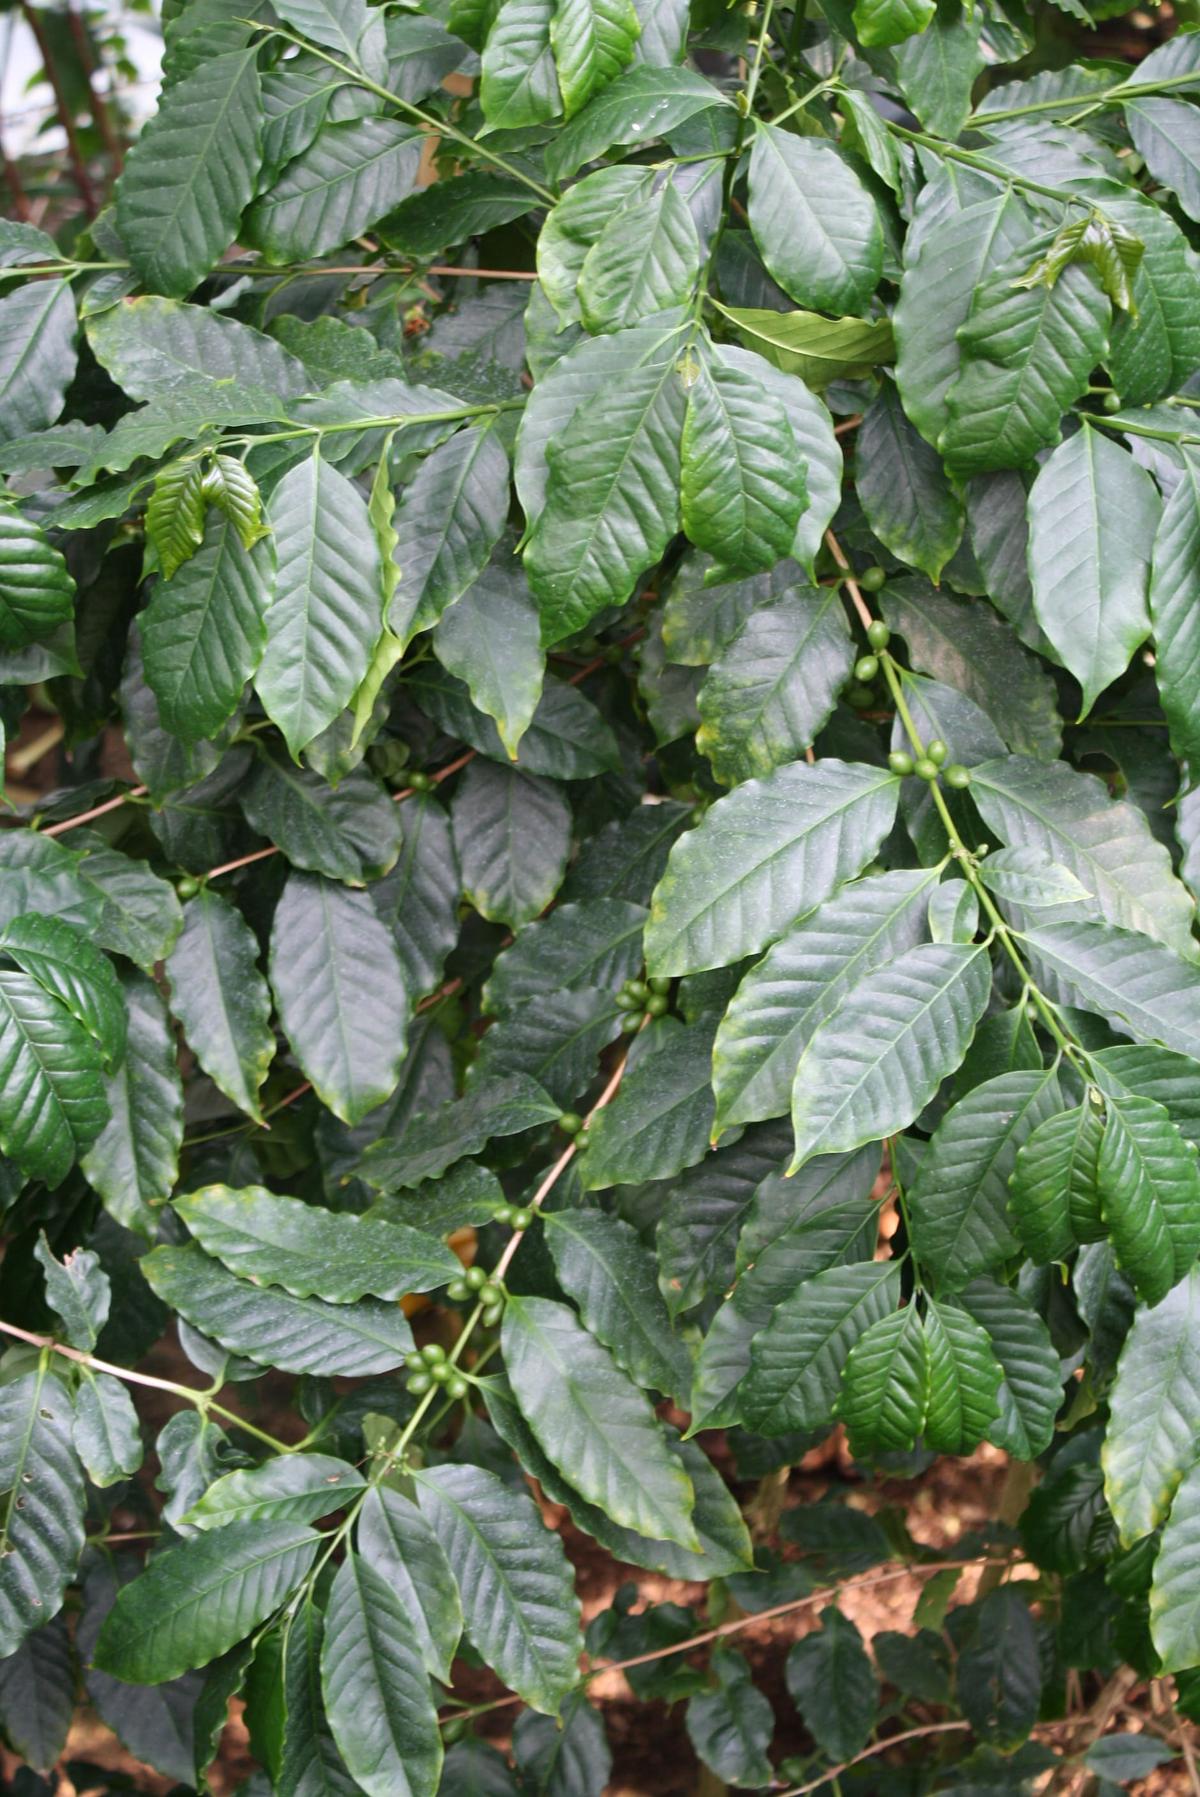 아라비카 커피나무